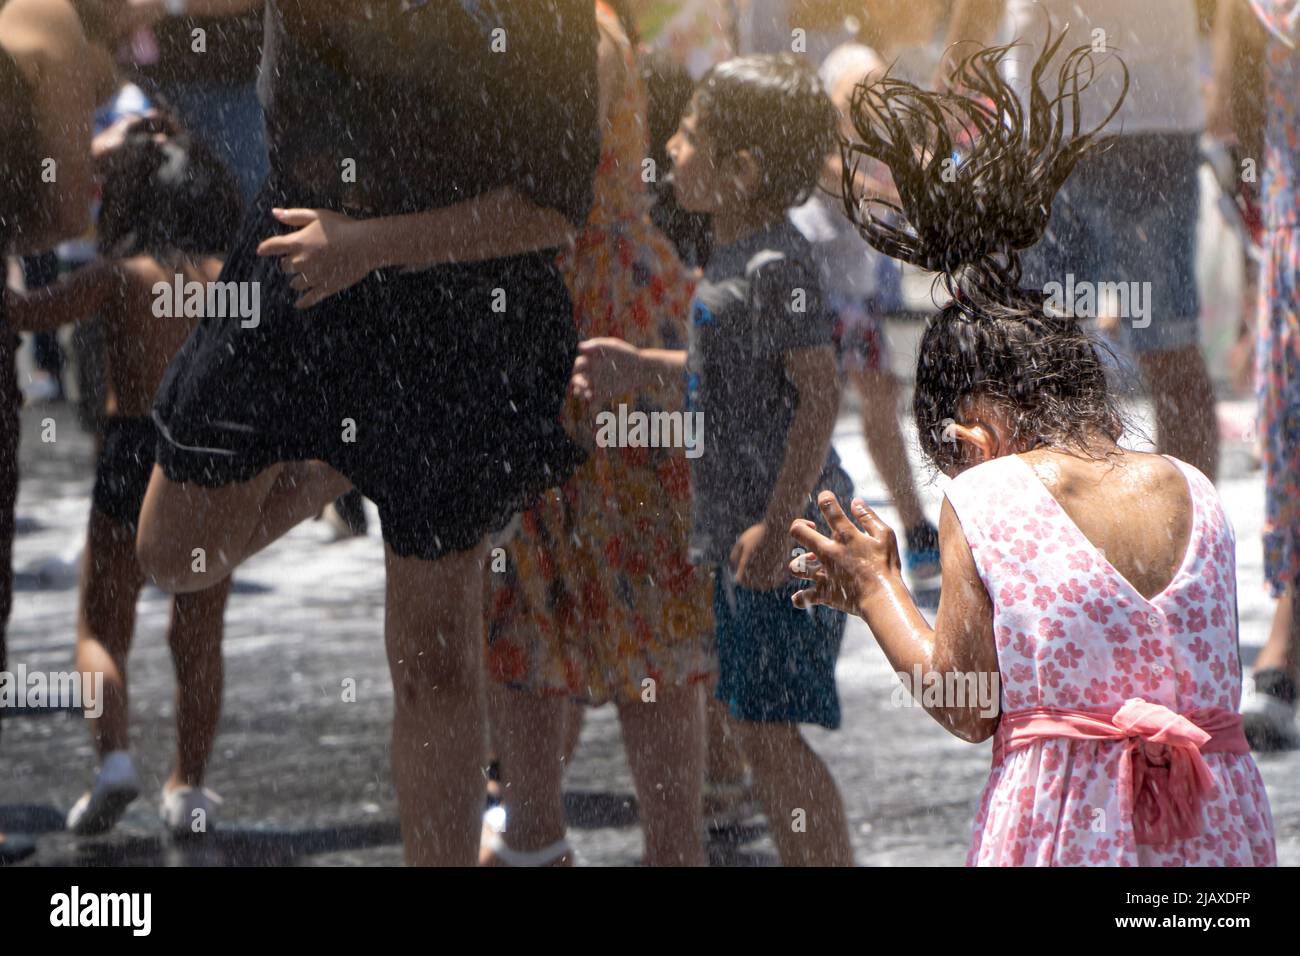 Kinder verschiedener Ethnien spielen auf der Straße mit Wasser und Schaum, der von Feuerwehrleuten auf einer lokalen Party geworfen wird Stockfoto